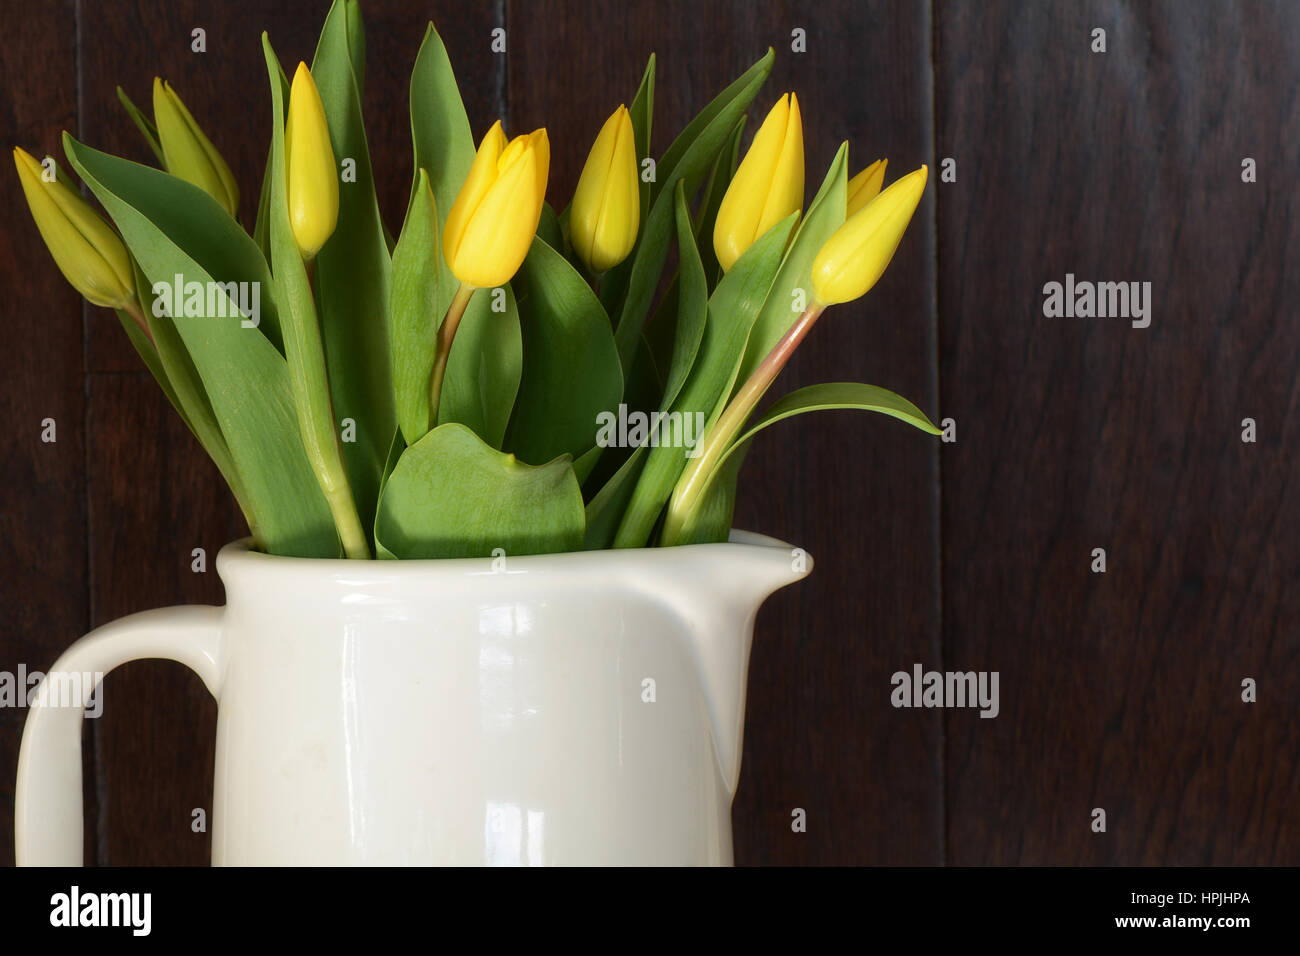 Tulipes jaunes en pot blanc avec fond en bois rustique en format horizontal Banque D'Images